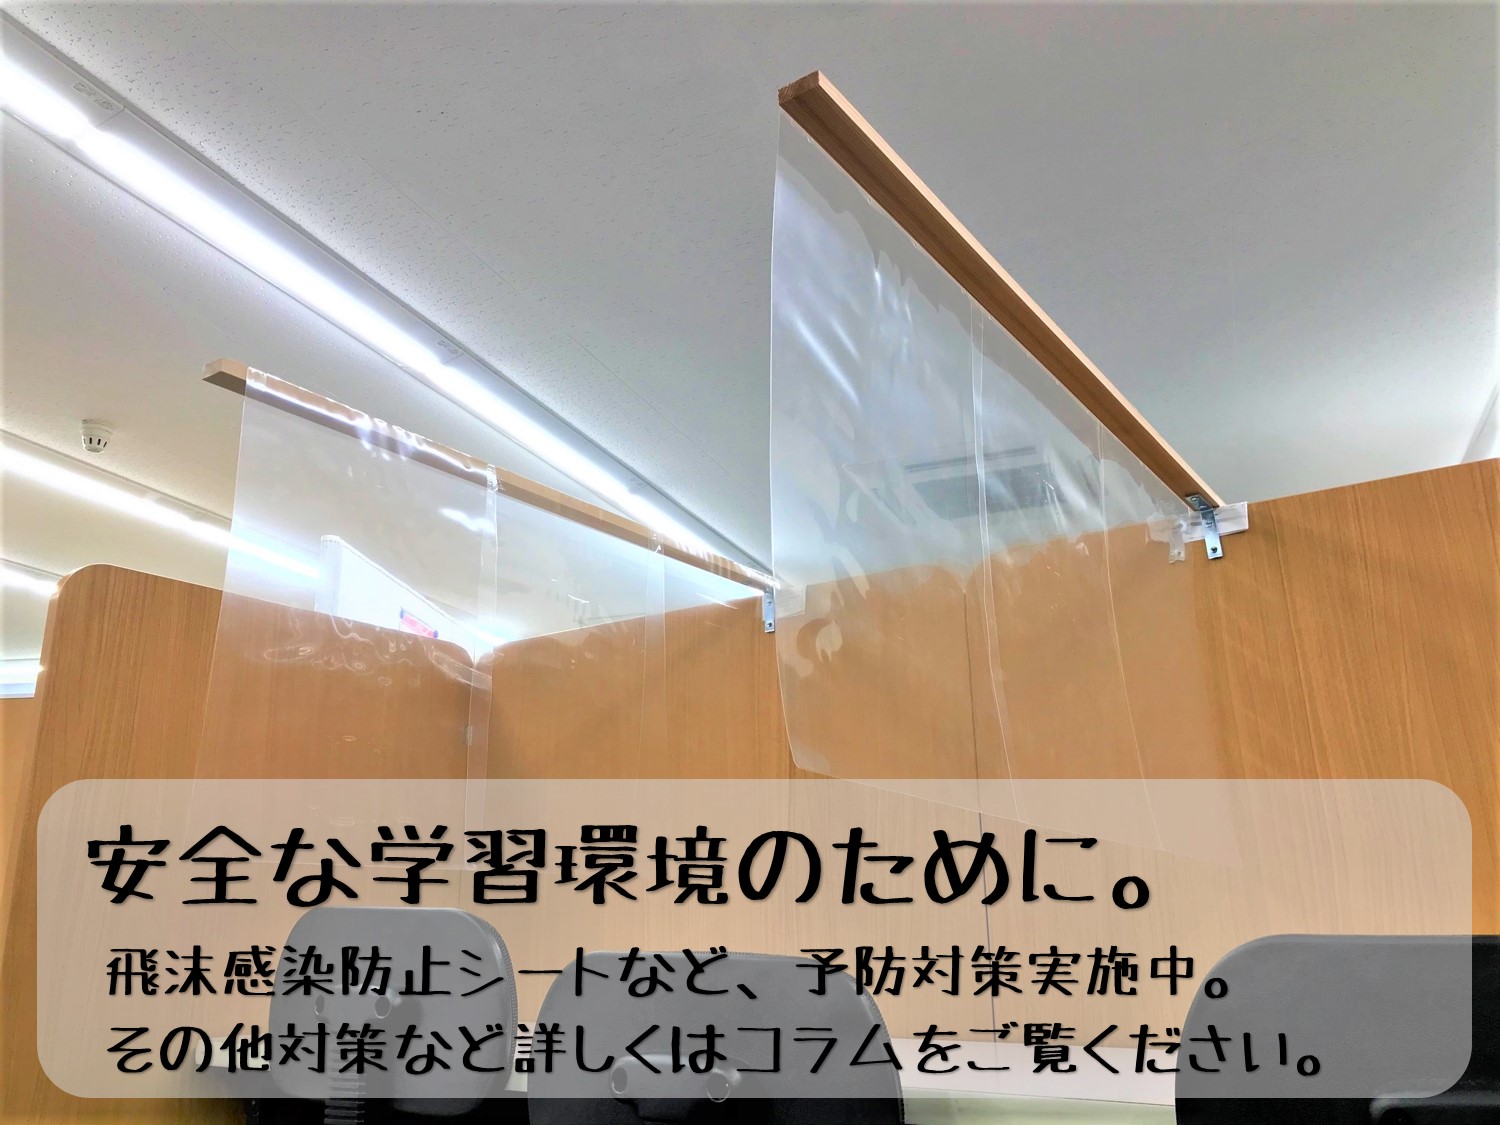  愛知県の「安全・安心宣言施設」受理番号「0015612」を頂いております。